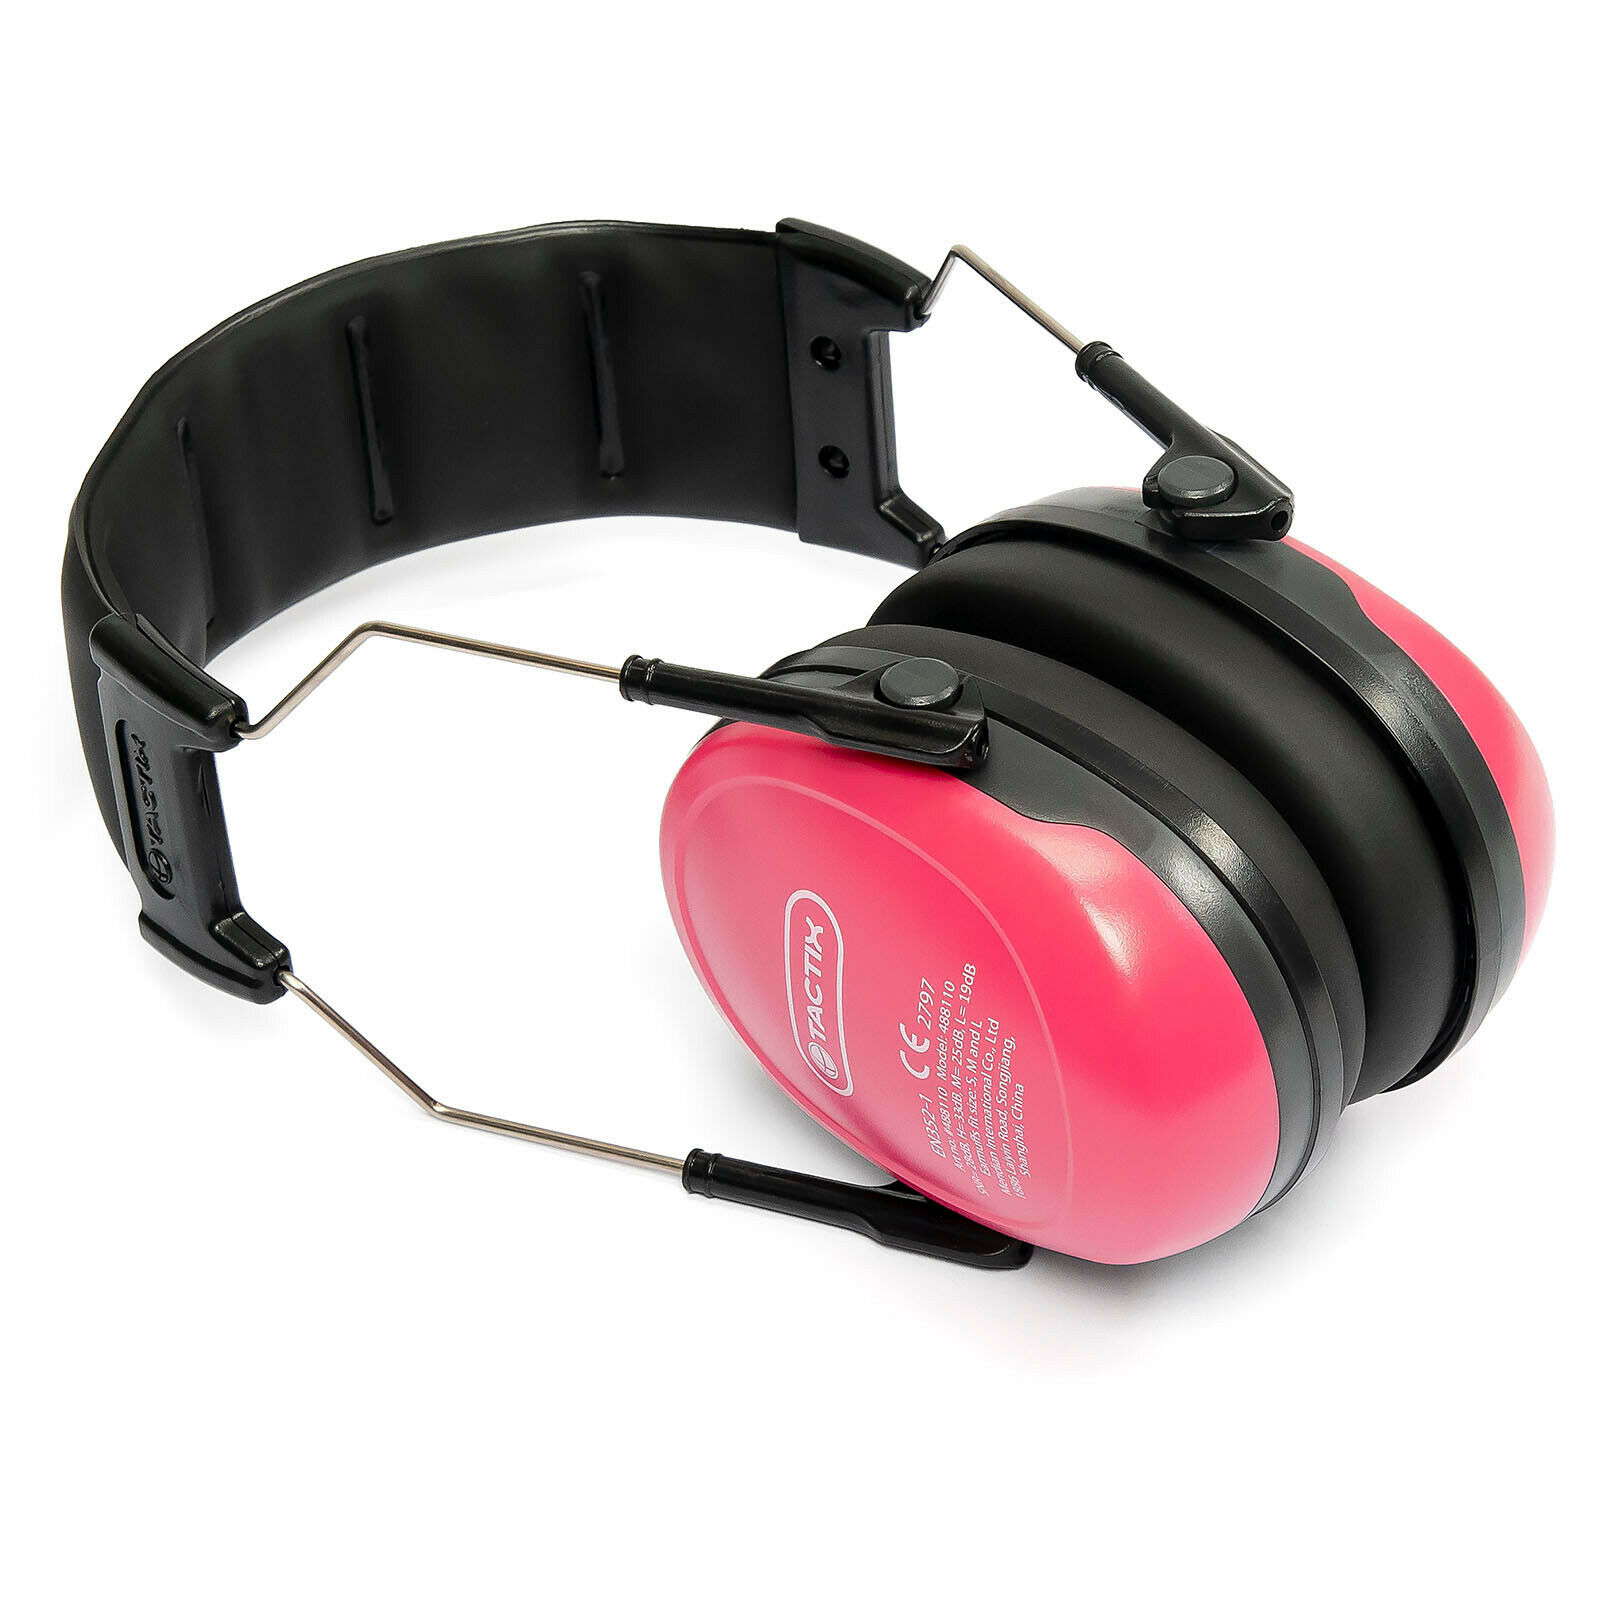 TACTIX Kinder Kapselgehörschutz Lärmschutz 2Farben gepolstert leicht CE-SNR29dB Pink